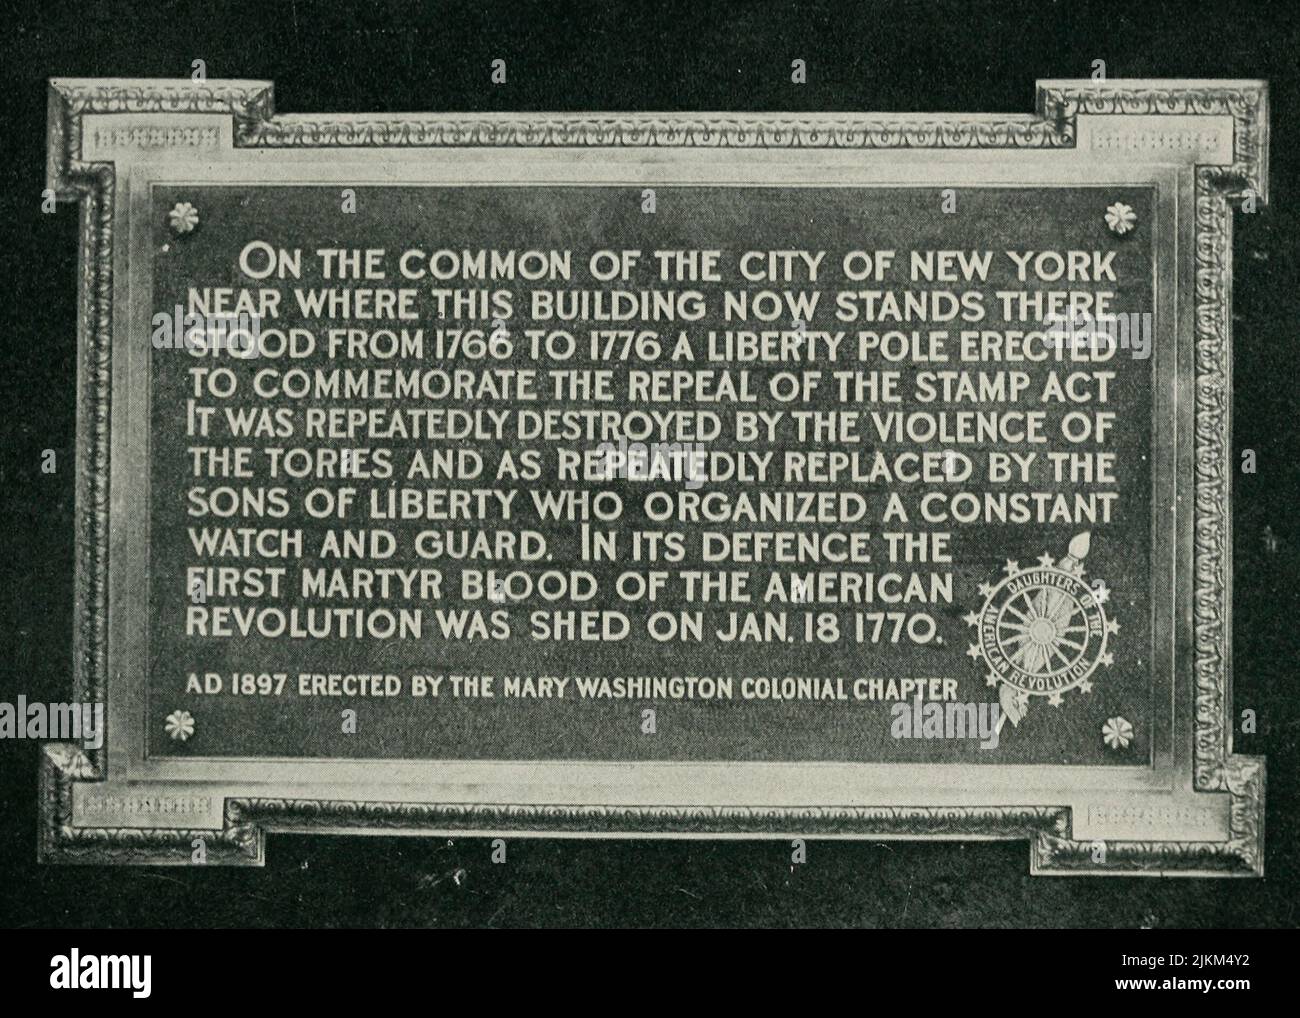 The Liberty Pole 1766-1776 - magnifique tablette de bronze érigée dans l'ancien bâtiment de poste en 1897, où elle était à l'origine avant la Déclaration d'indépendance. Banque D'Images